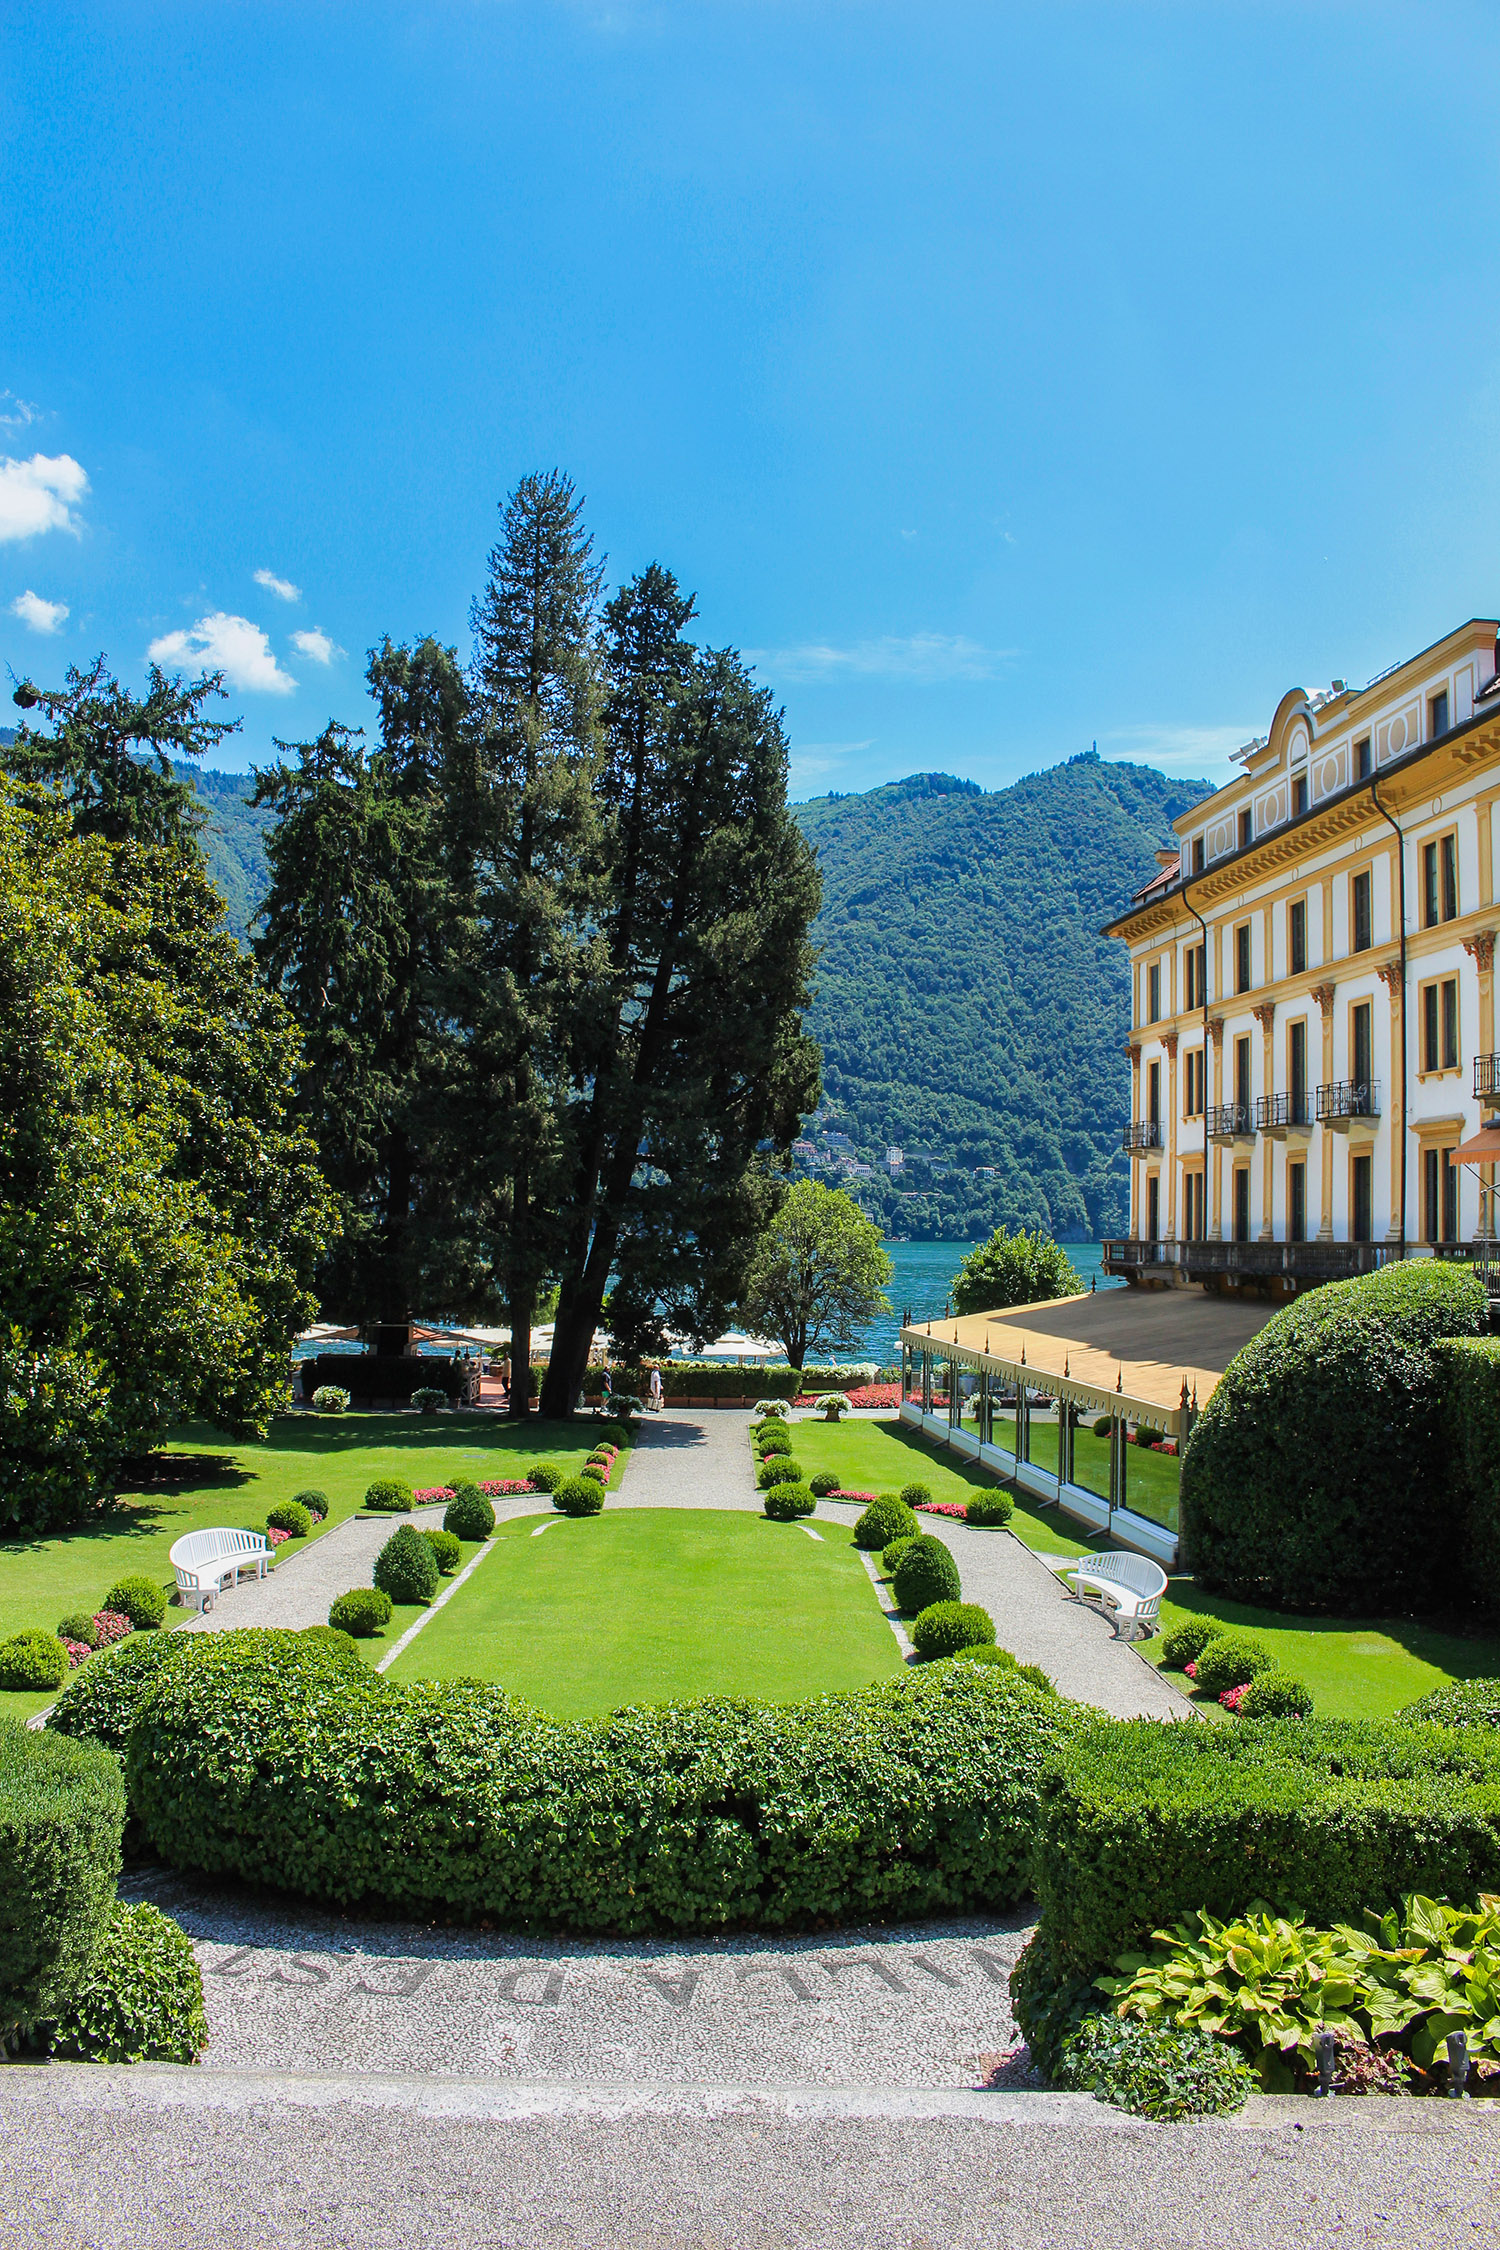 Location da sogno: Villa d'Este, la bellezza senza tempo - Time For Events